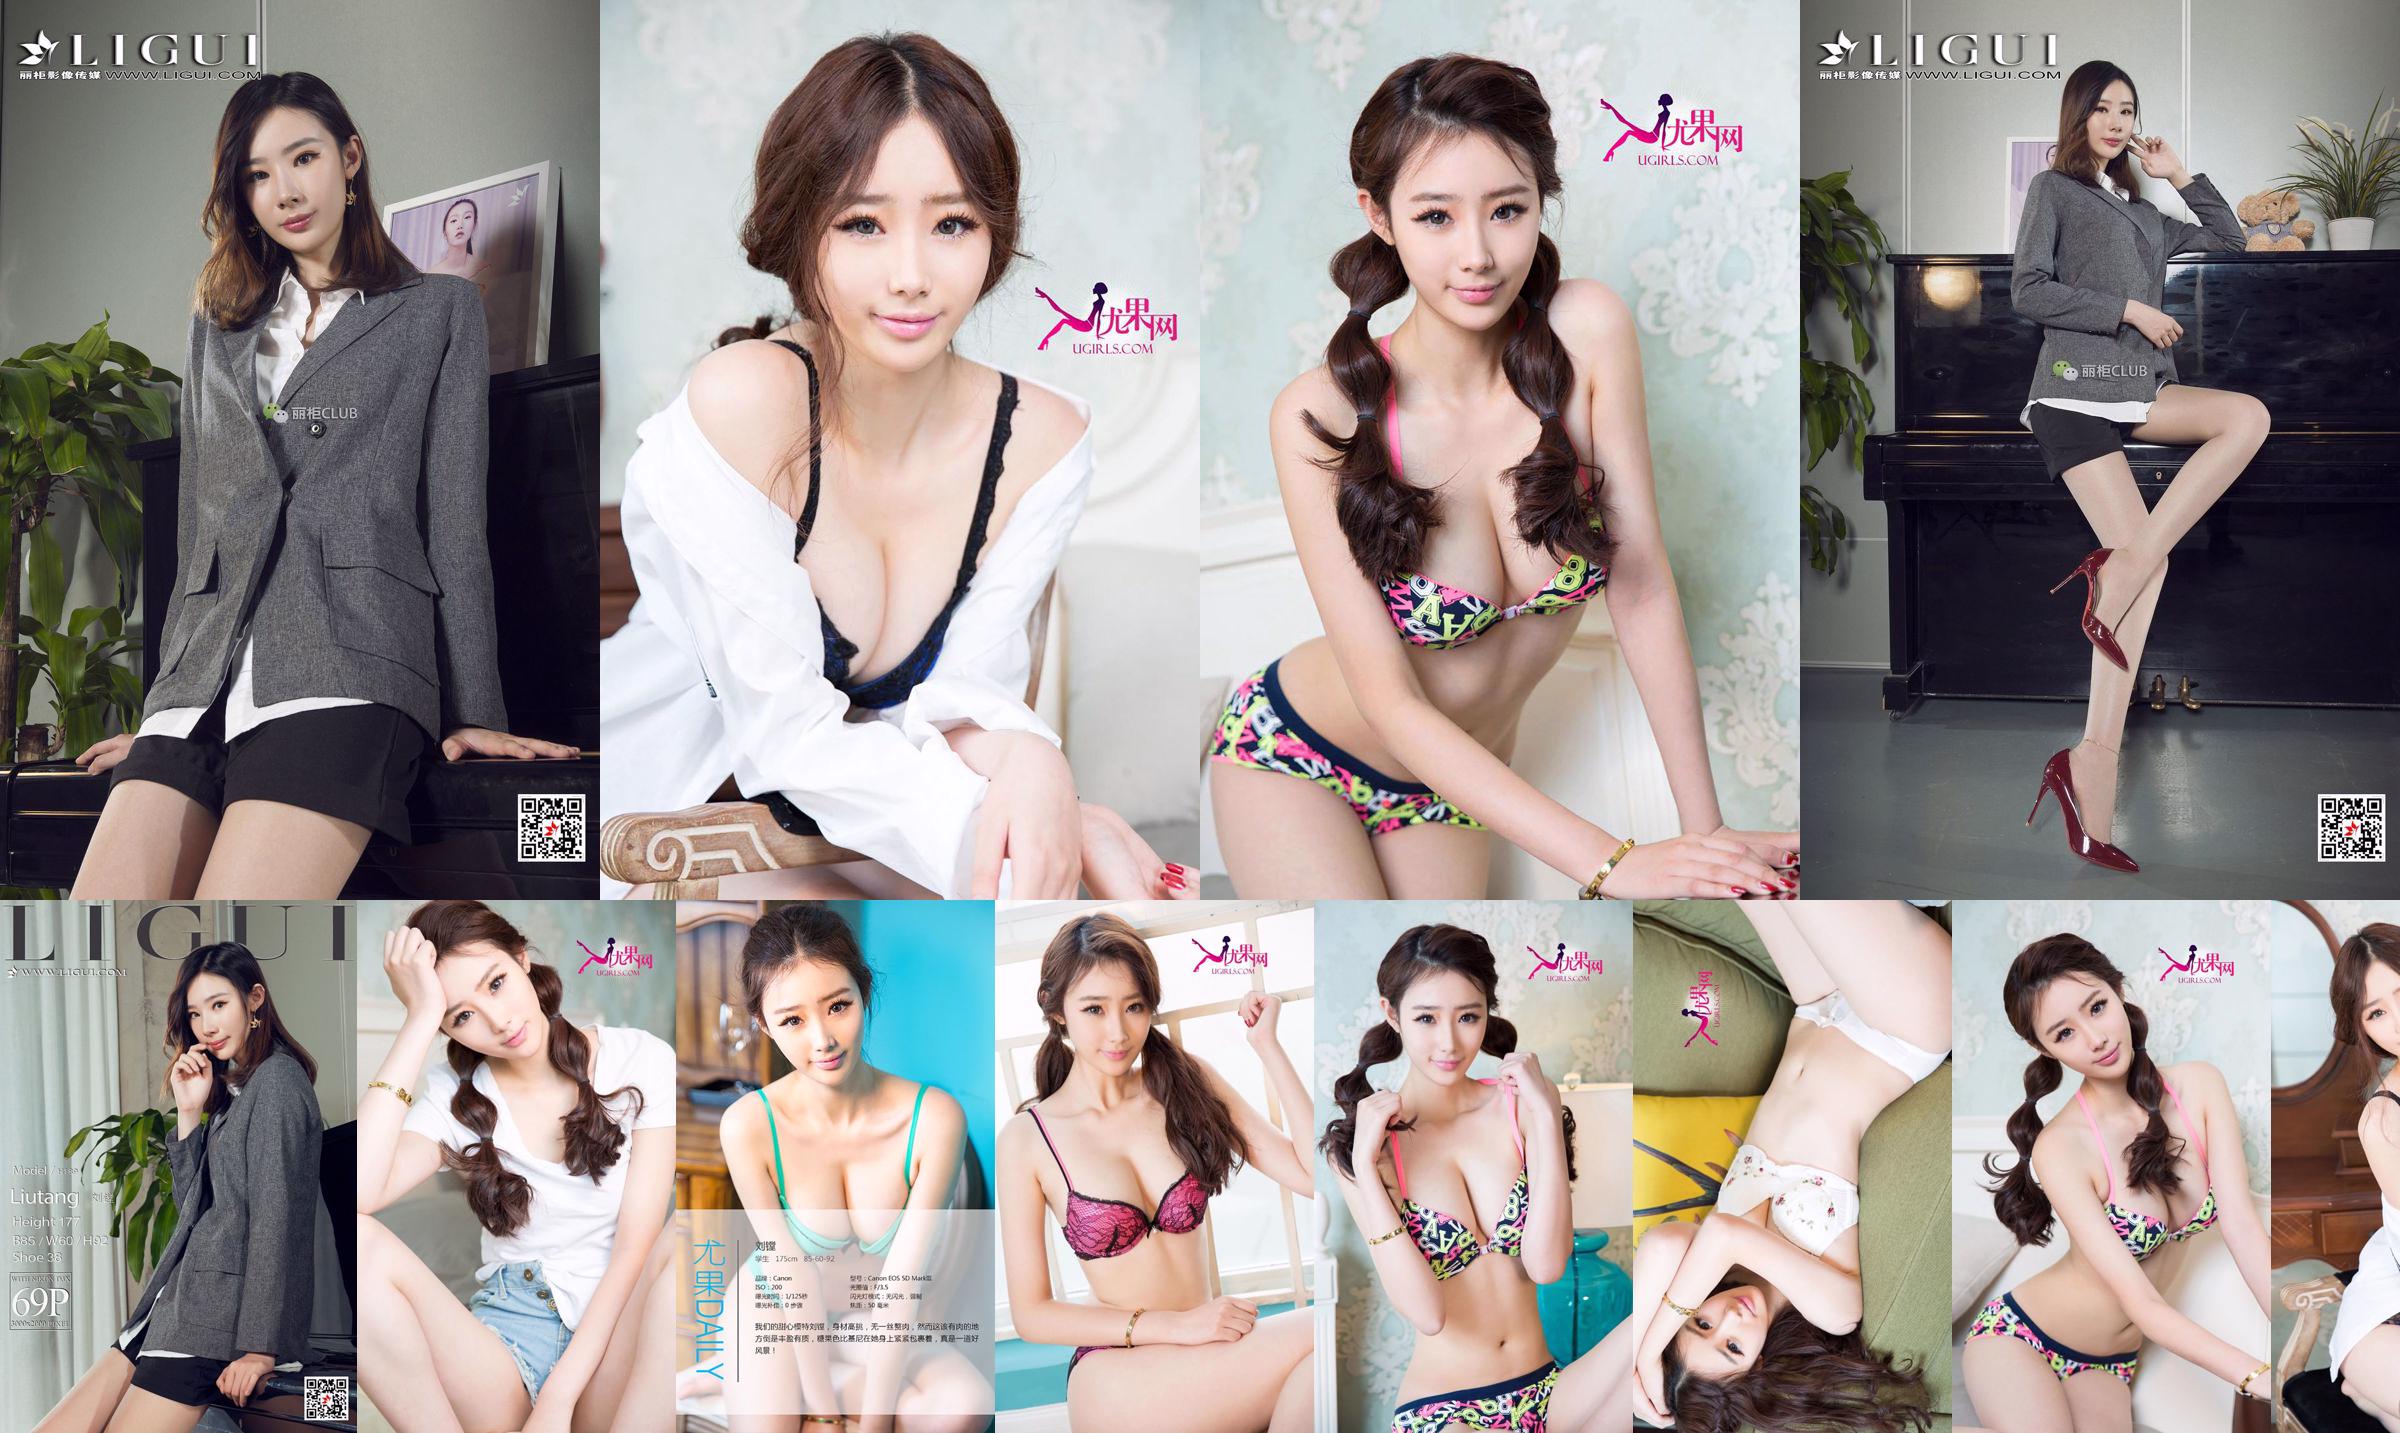 Liu Boring "Slim Young Girl" [Love Youwu Ugirls] No.259 No.141ba8 Pagina 2